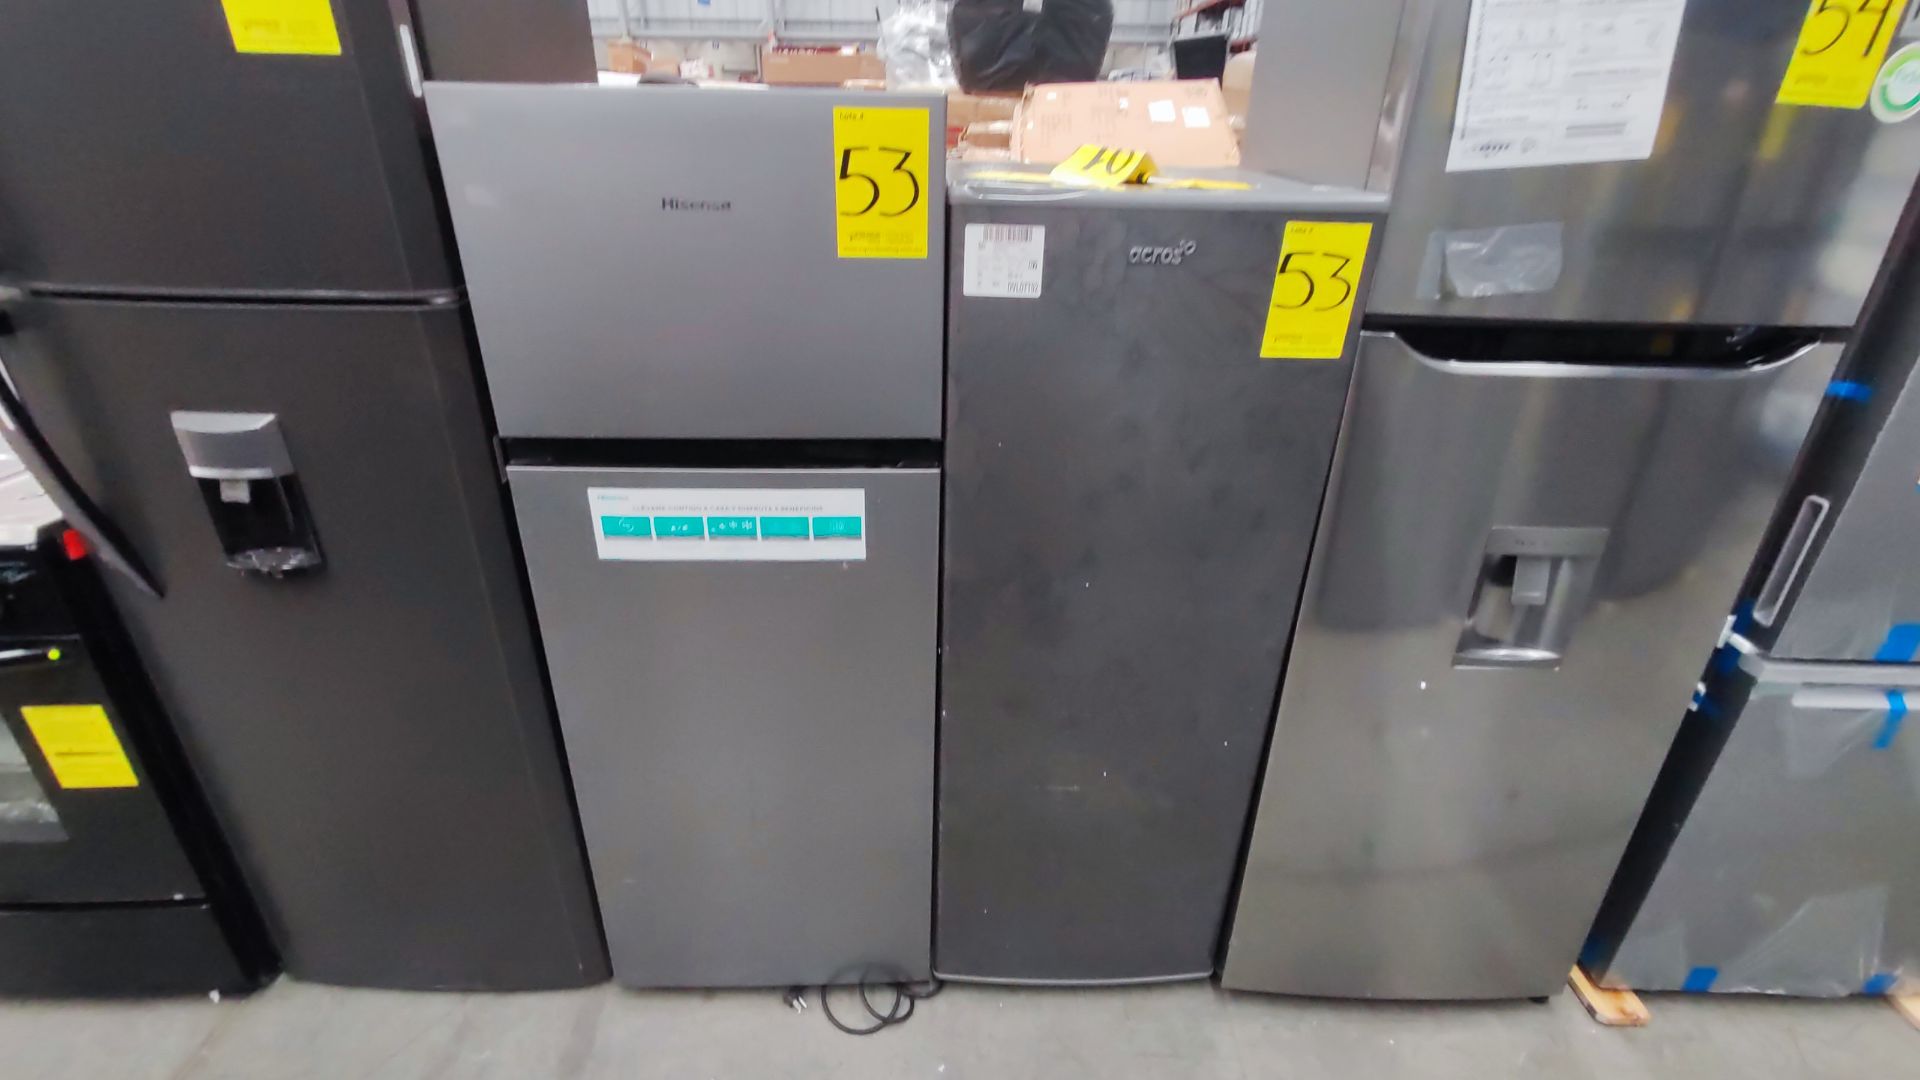 Lote de 2 Refrigeradores, Contiene; 1 Refrigerador Marca Hisense, Modelo BCYNY, Serie 1B0205Z0080JB - Image 6 of 11